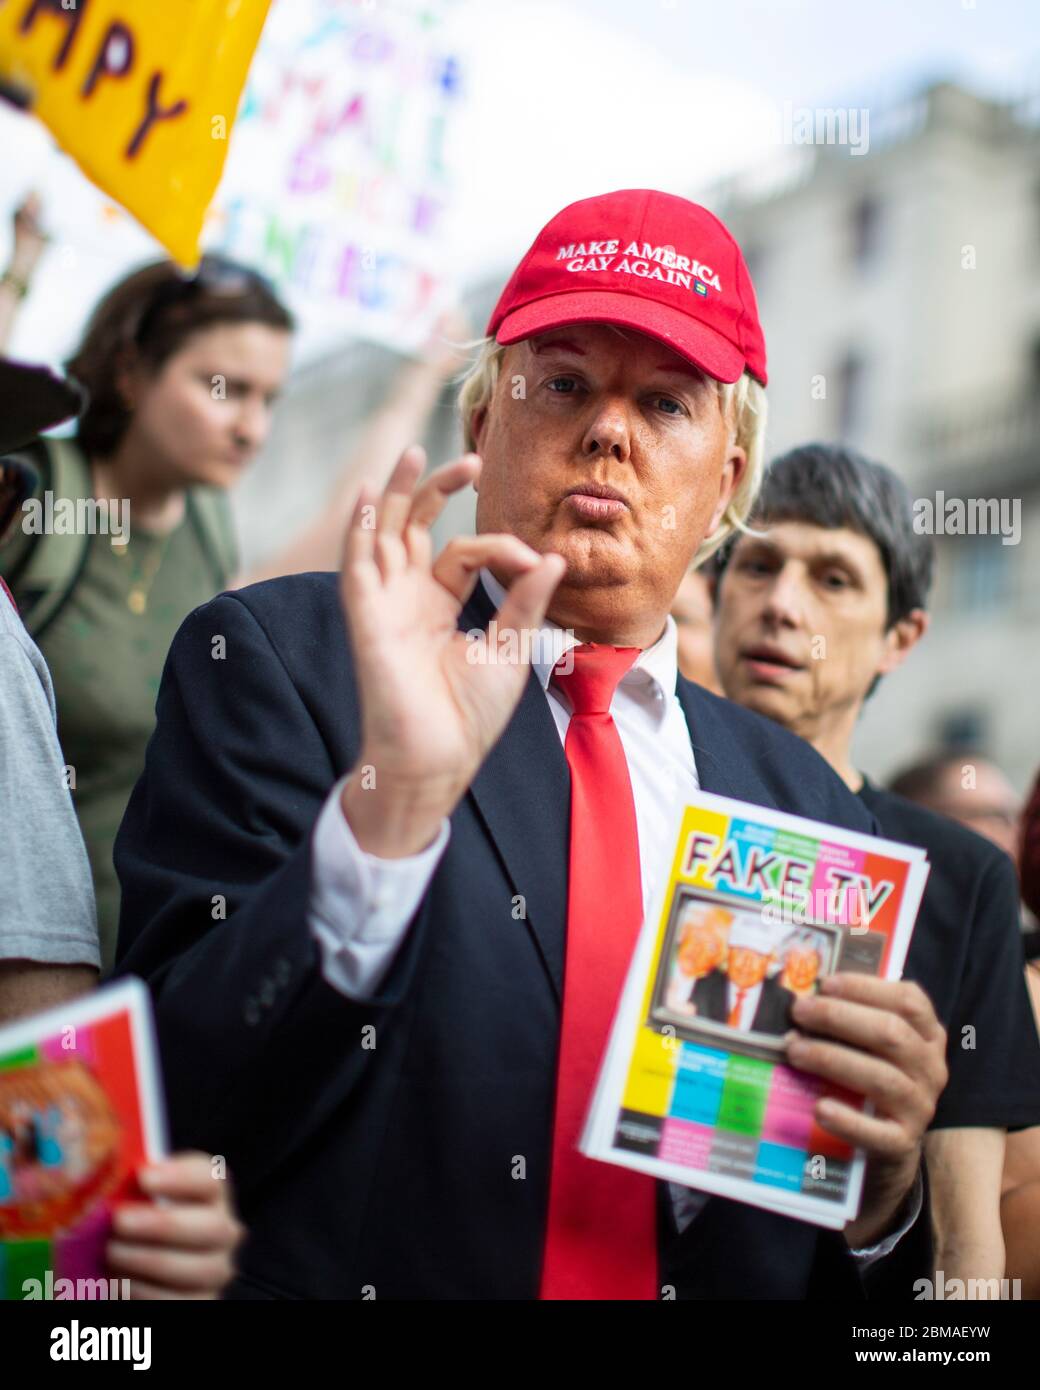 Una donna che impersonava Donald Trump e indossava un cappello con il testo "Make America Gay Again", alla protesta contro la visita di Donald Trump a Londra Foto Stock